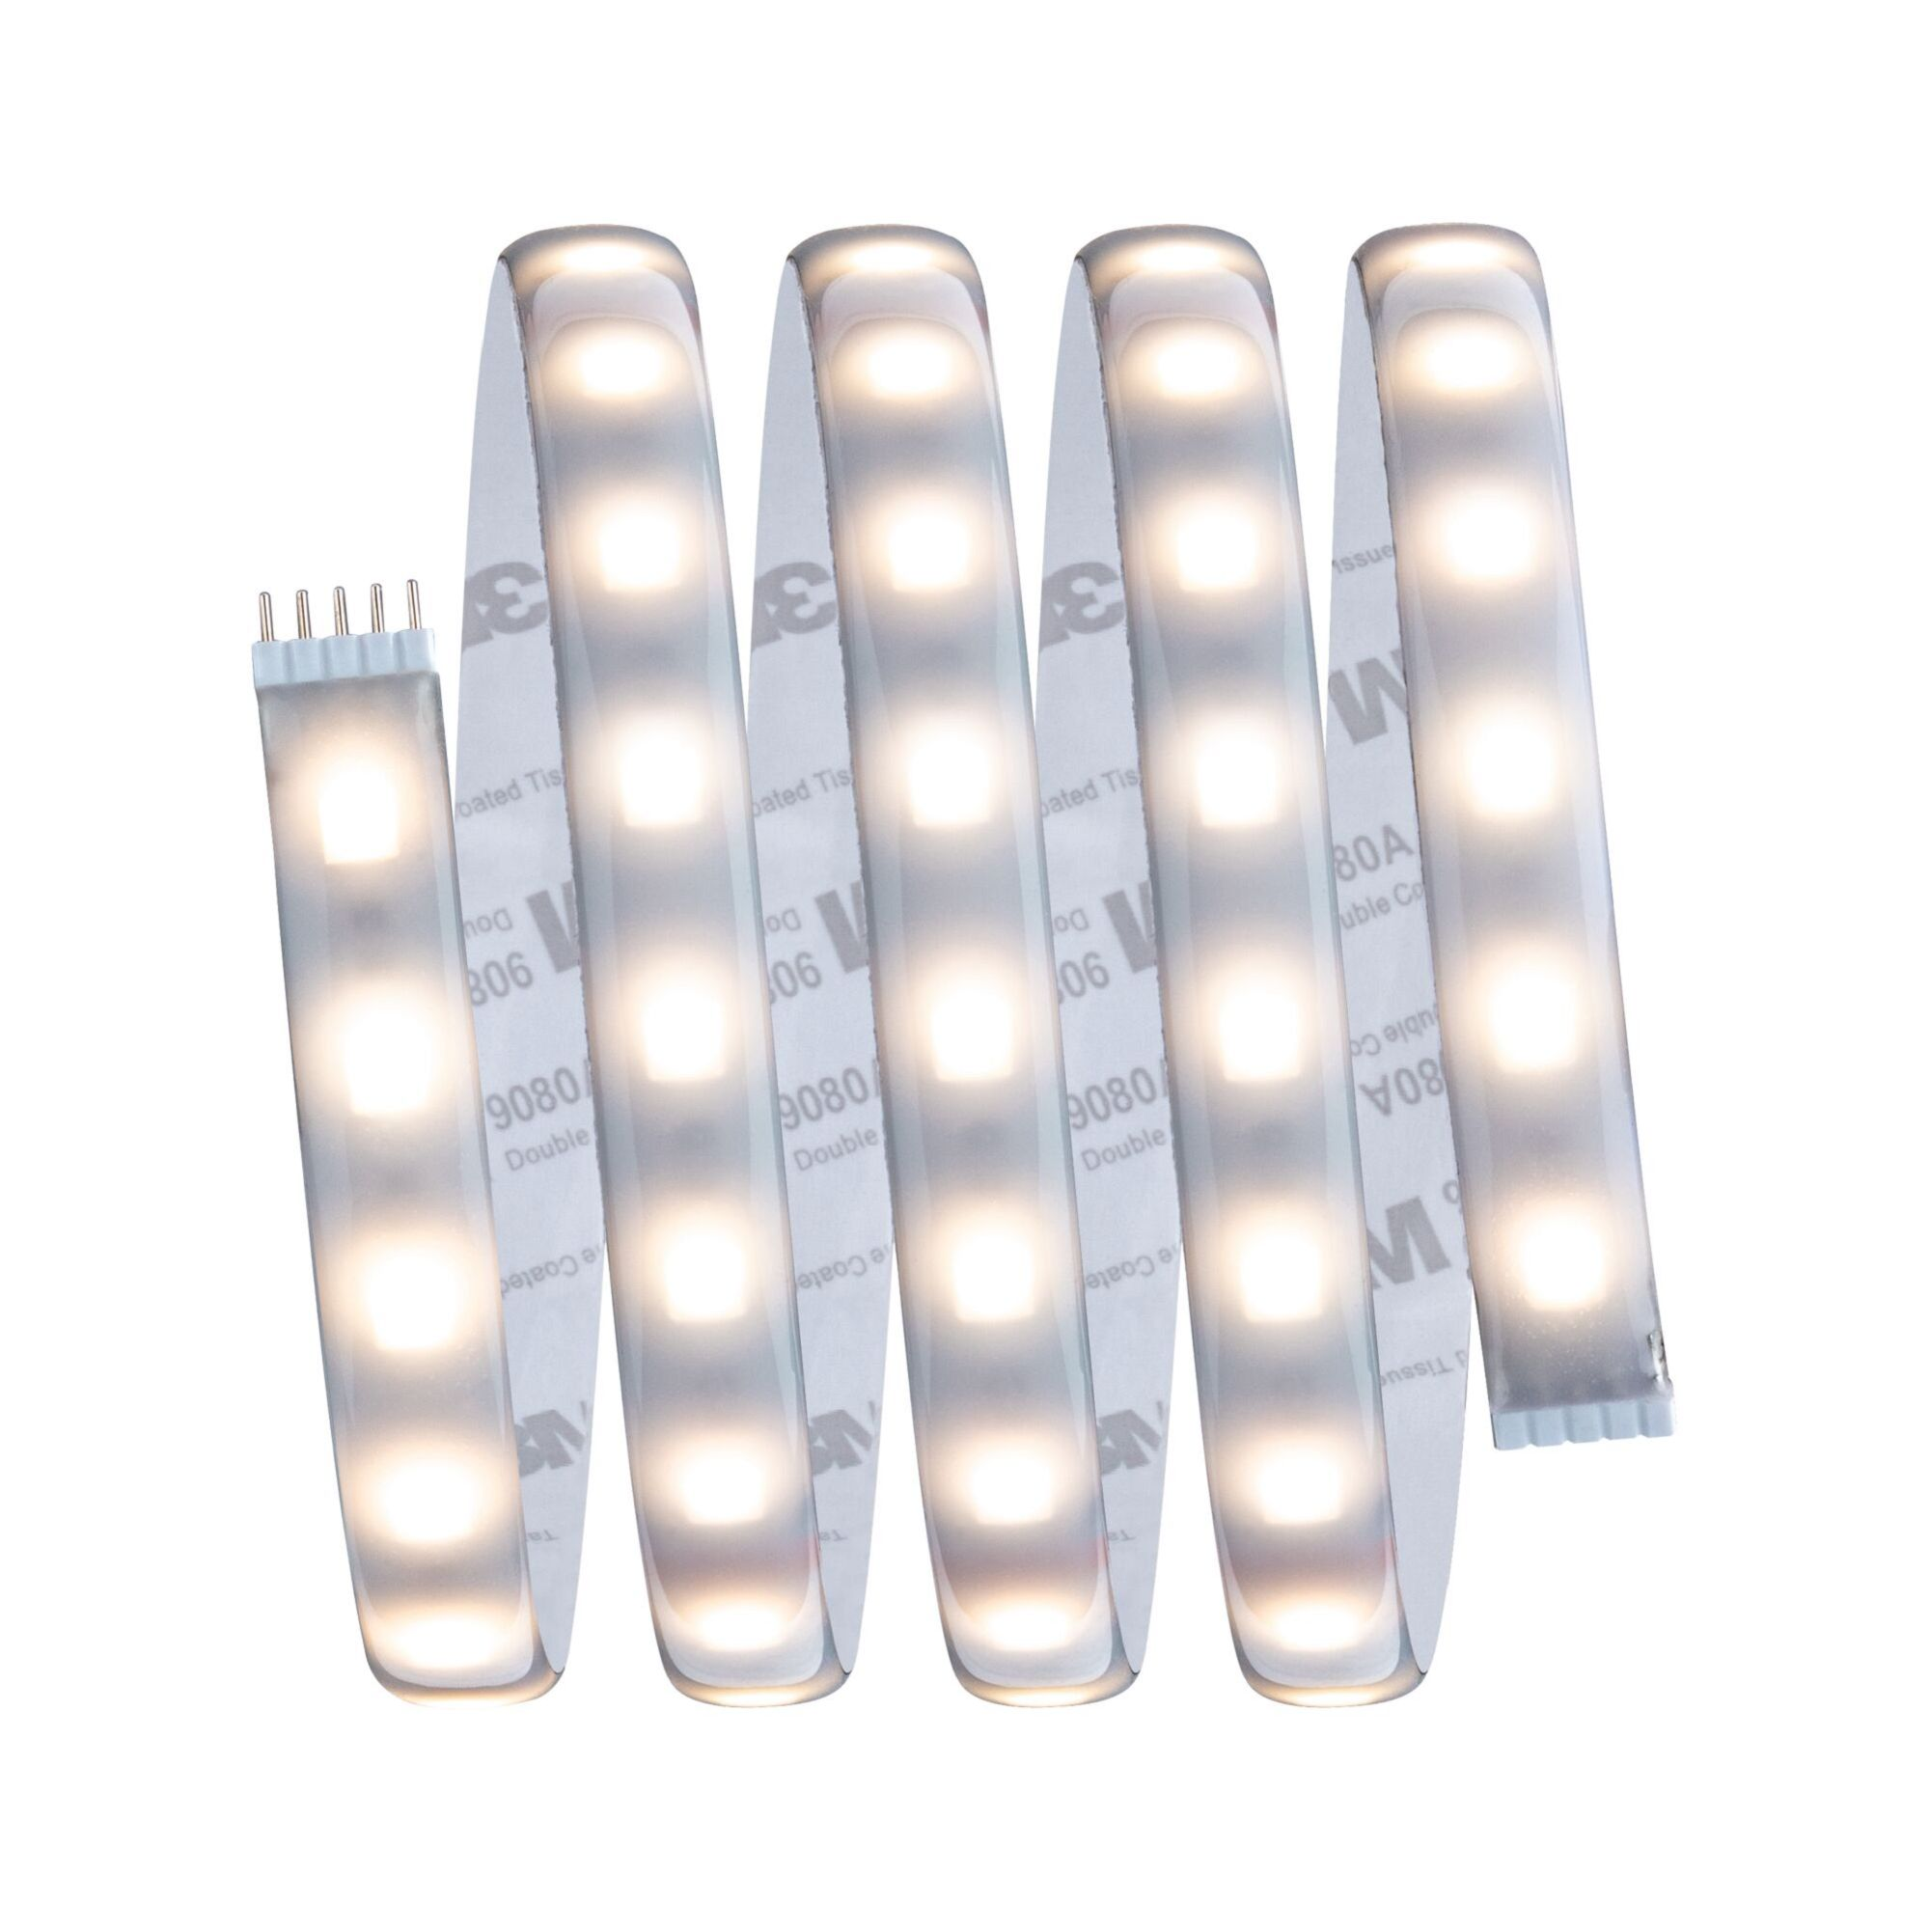 PAULMANN LICHT MaxLED 500 (78883) White RGBW|Tunable LED Farbwechsel Strips